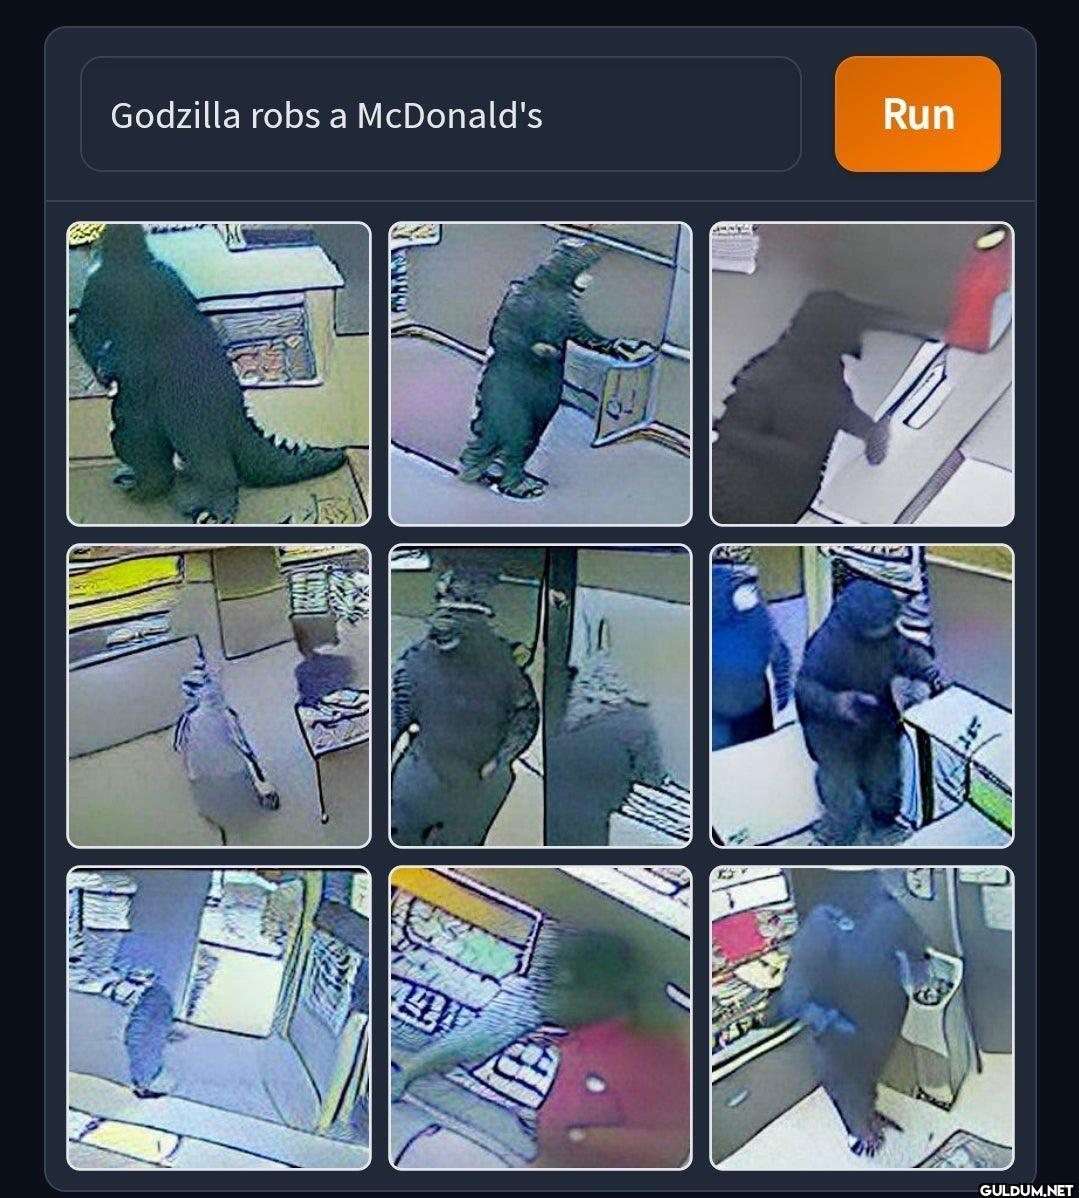 Godzilla robs a McDonald's...